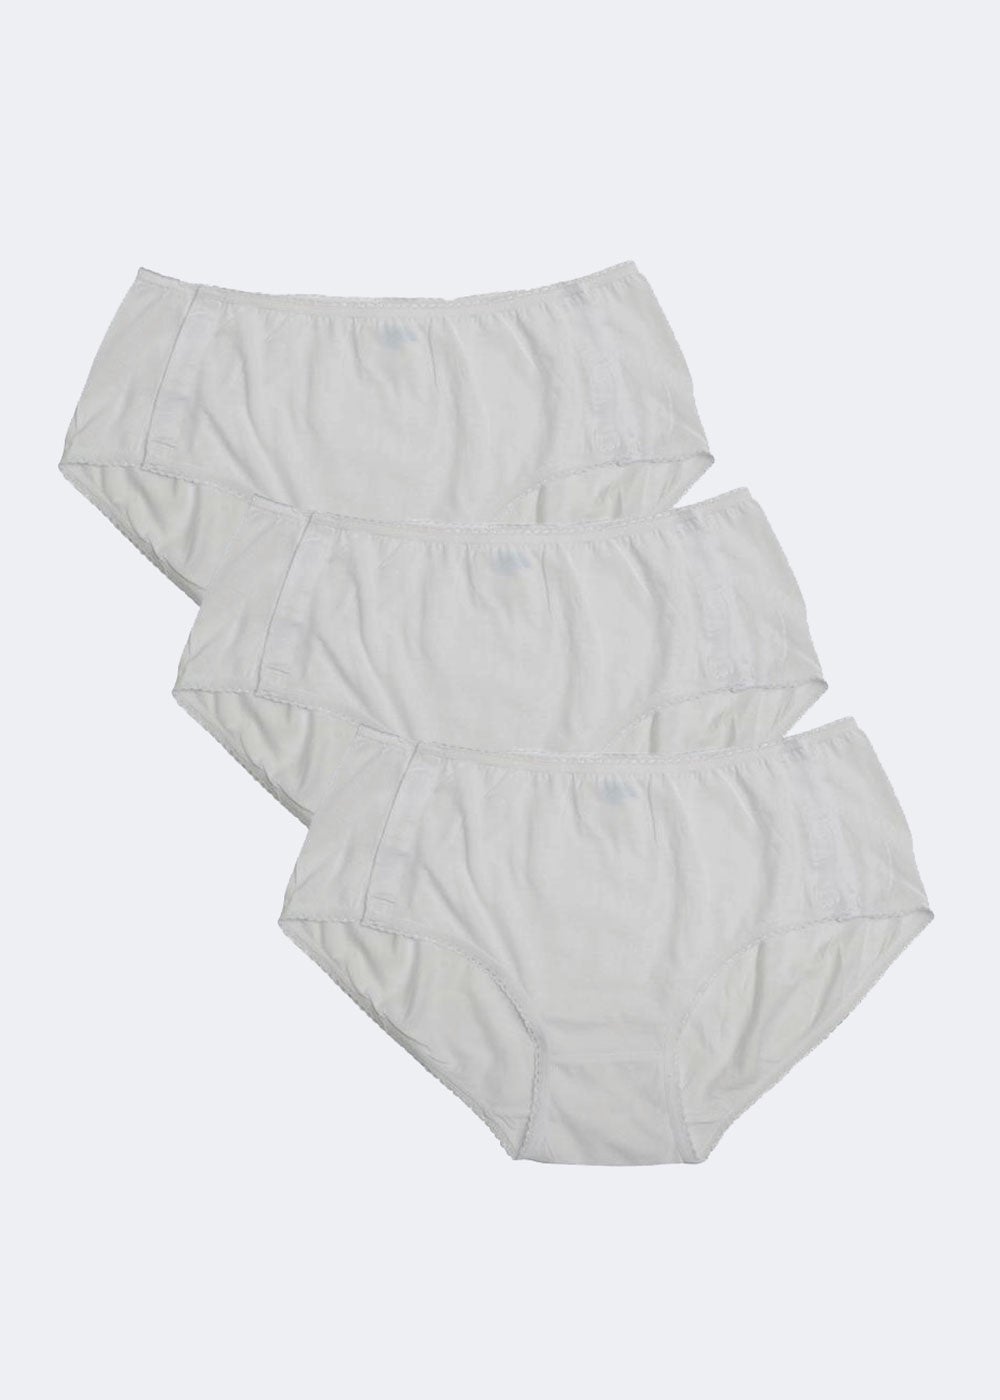 PACK OF 3 Women’s Side Opening Underwear